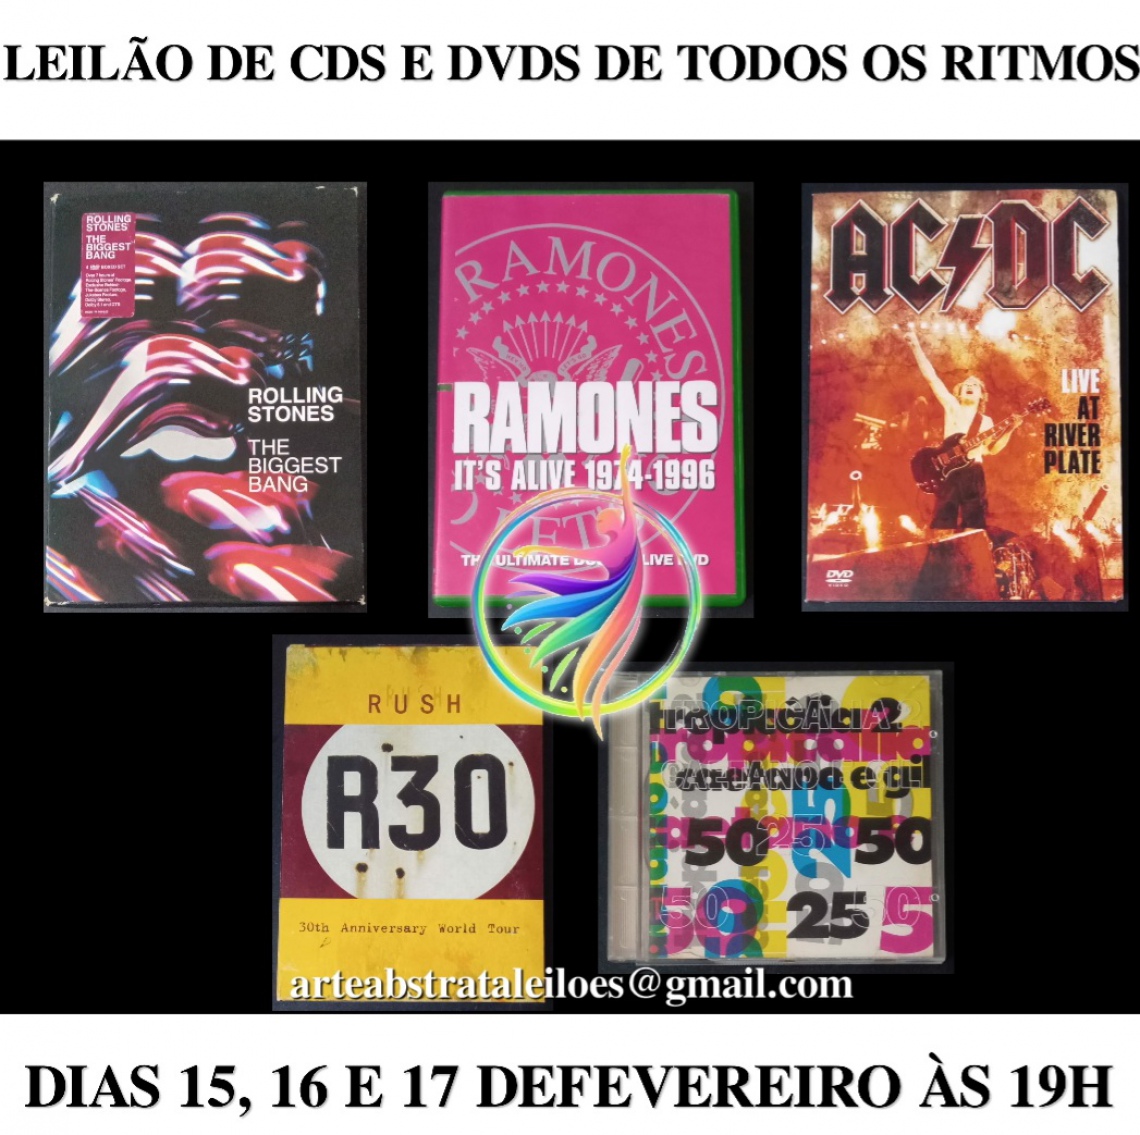 LEILÃO DE CDS E DVDS DE TODOS OS RITMOS